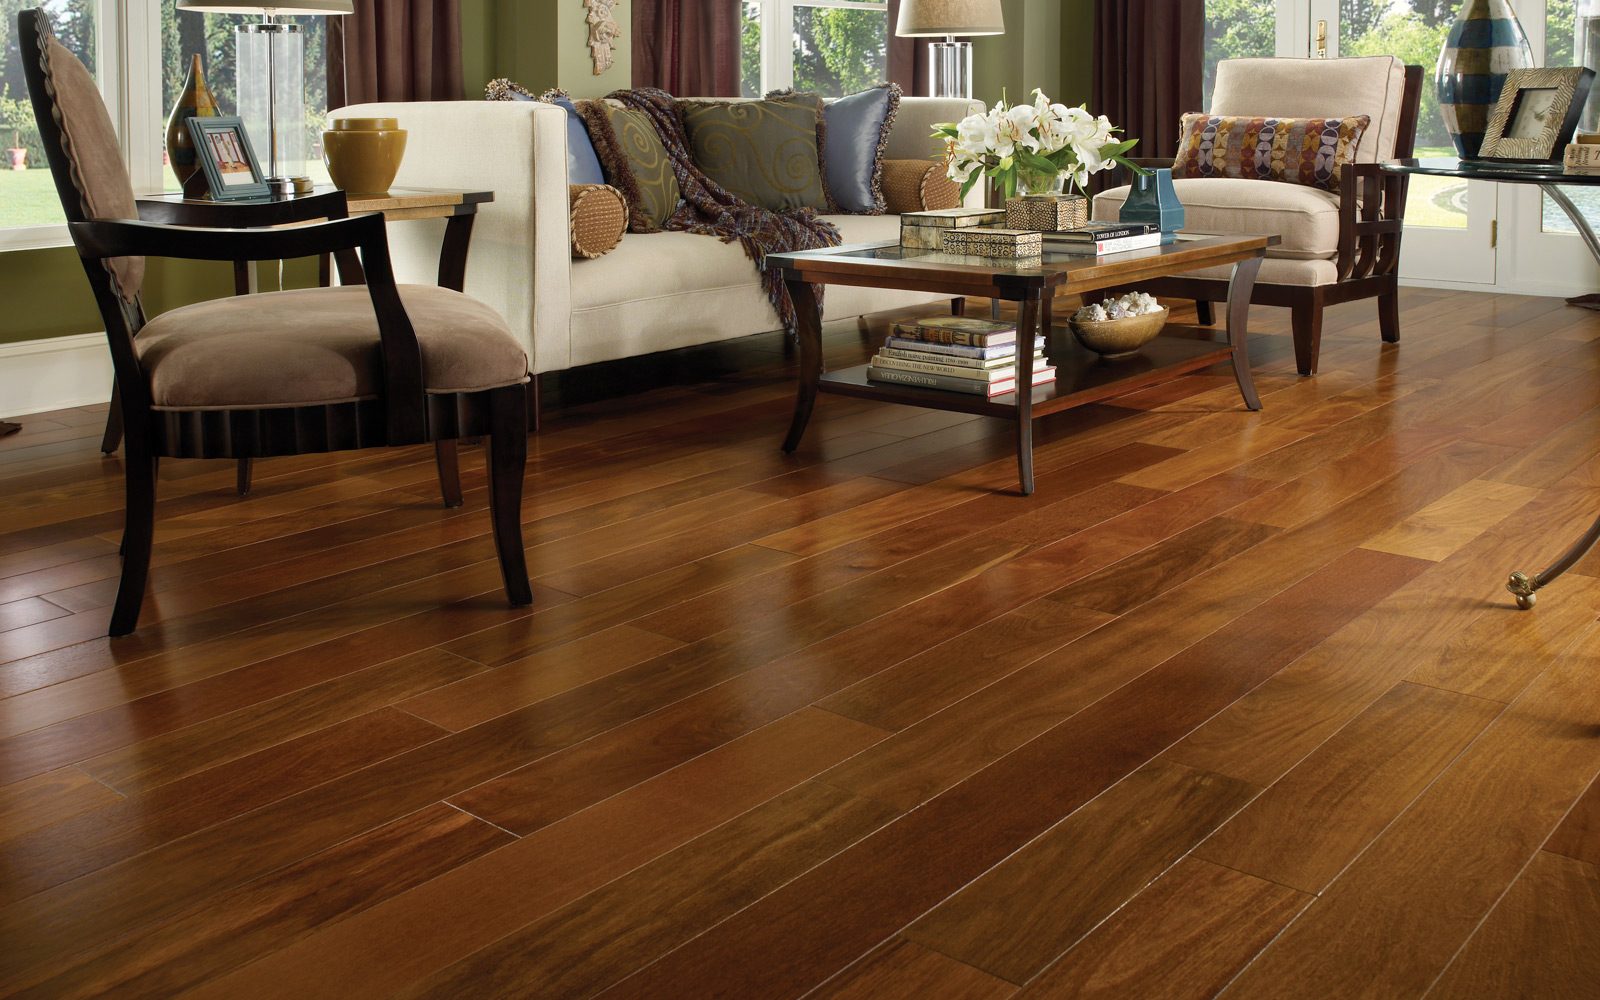 hardwood_flooring|hardwood-flooring-esbflooring|laminate-flooring-esbflooring|